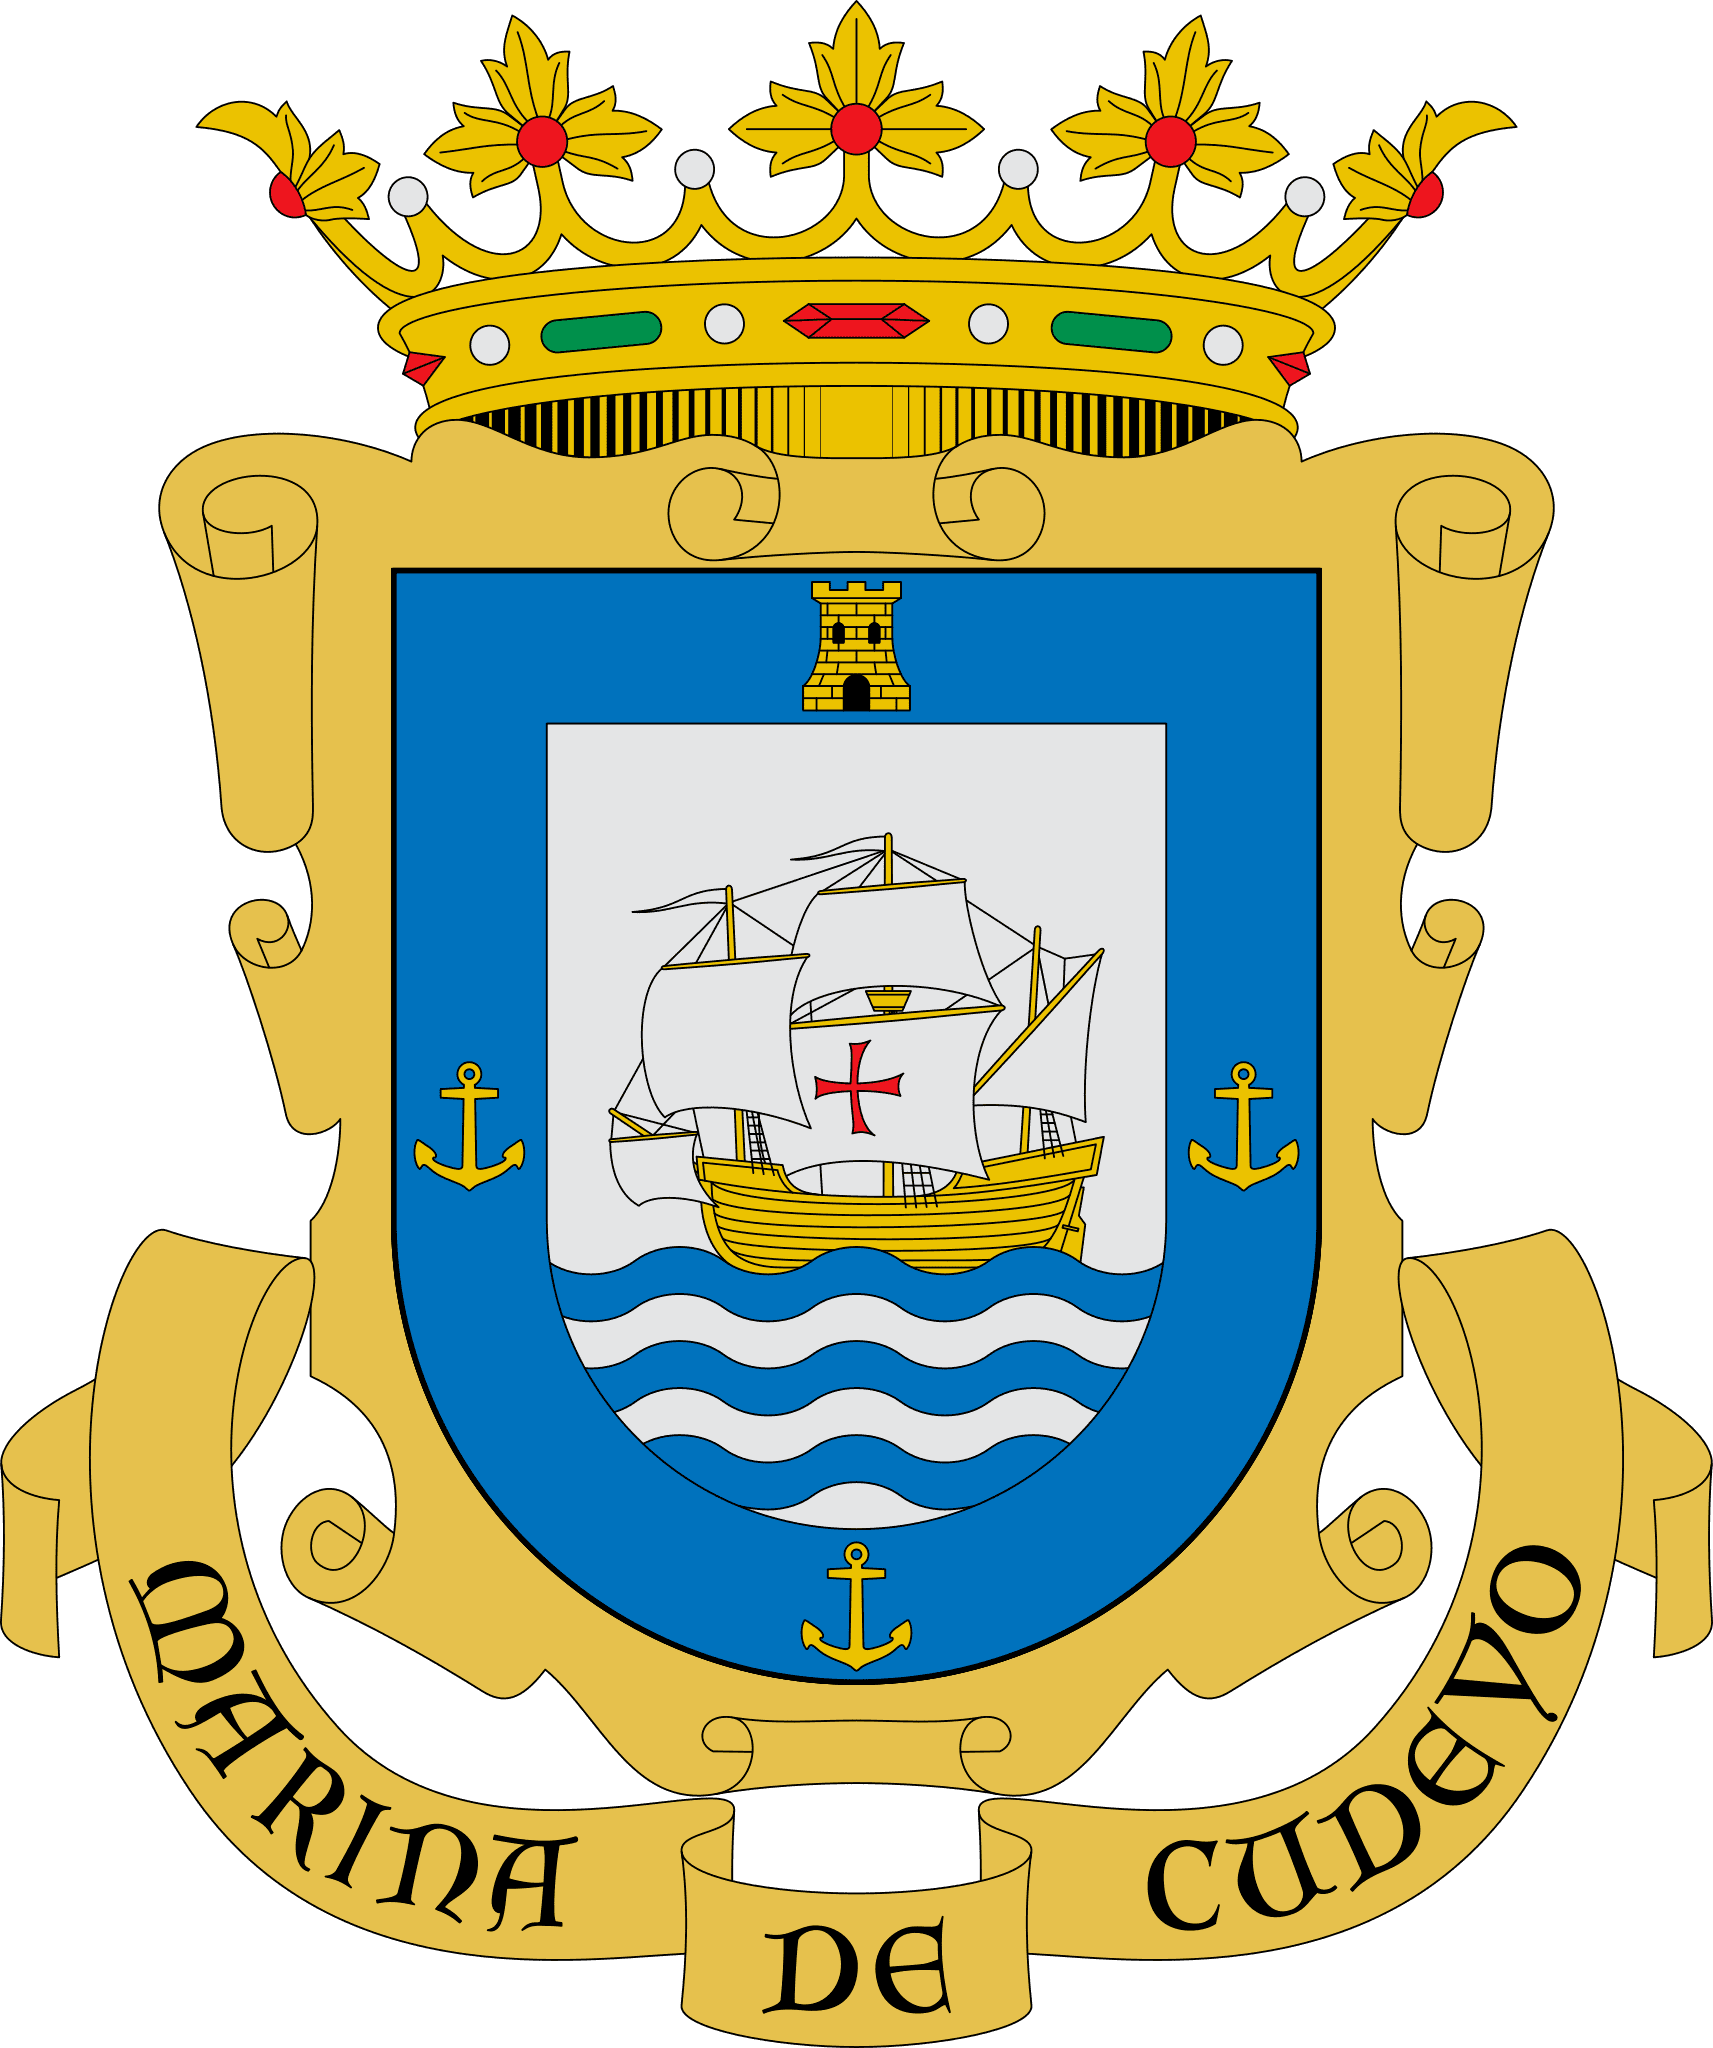 Ayuntamiento de Marina de Cudeyo